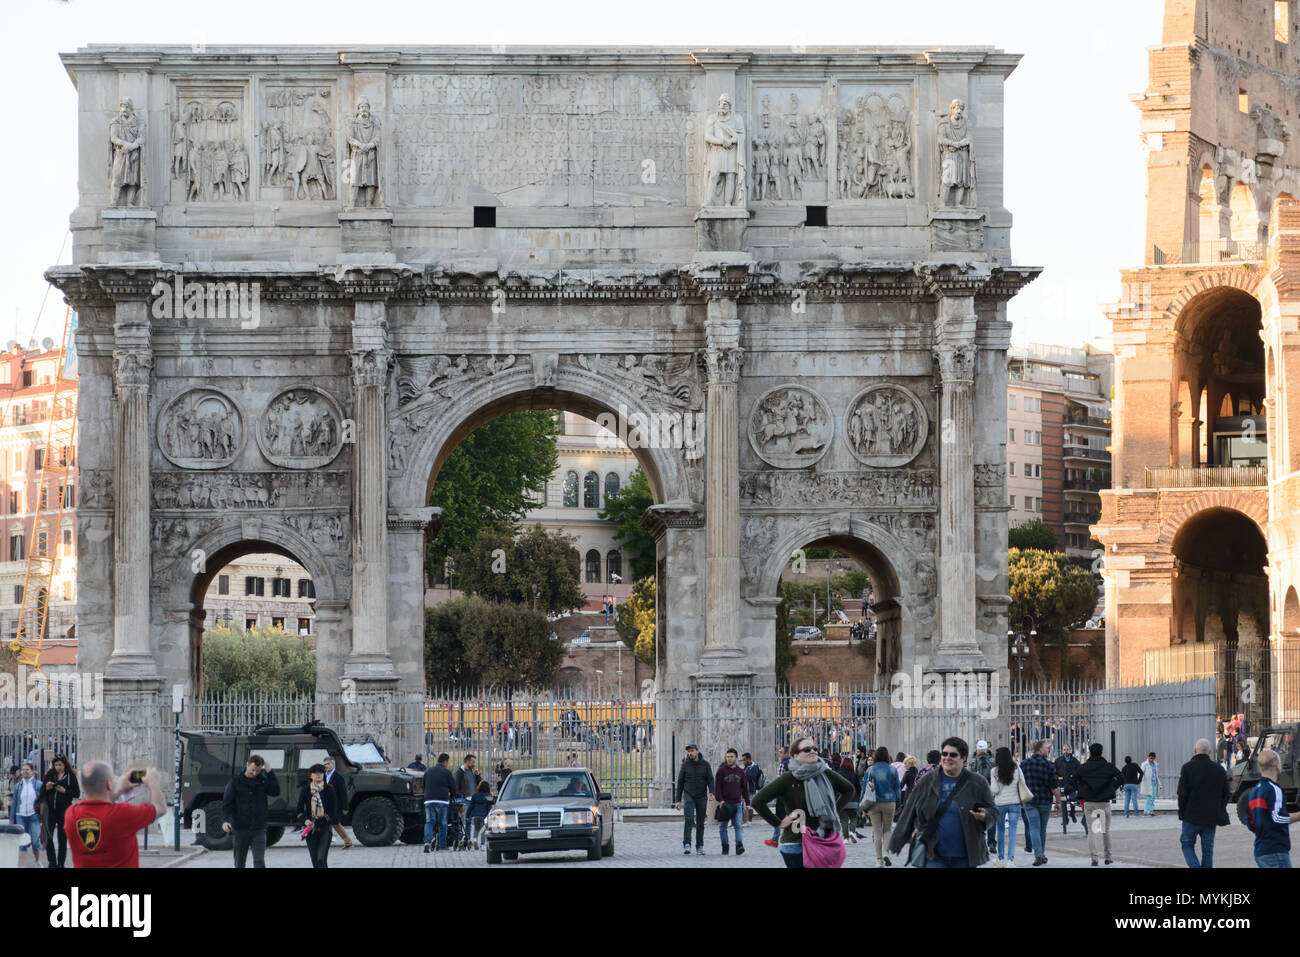 Roma, Italia - 23 de abril de 2017: Gente caminando cerca del Arco de Constantino, Italiano Arco di Costantino un arco triunfal Foto de stock